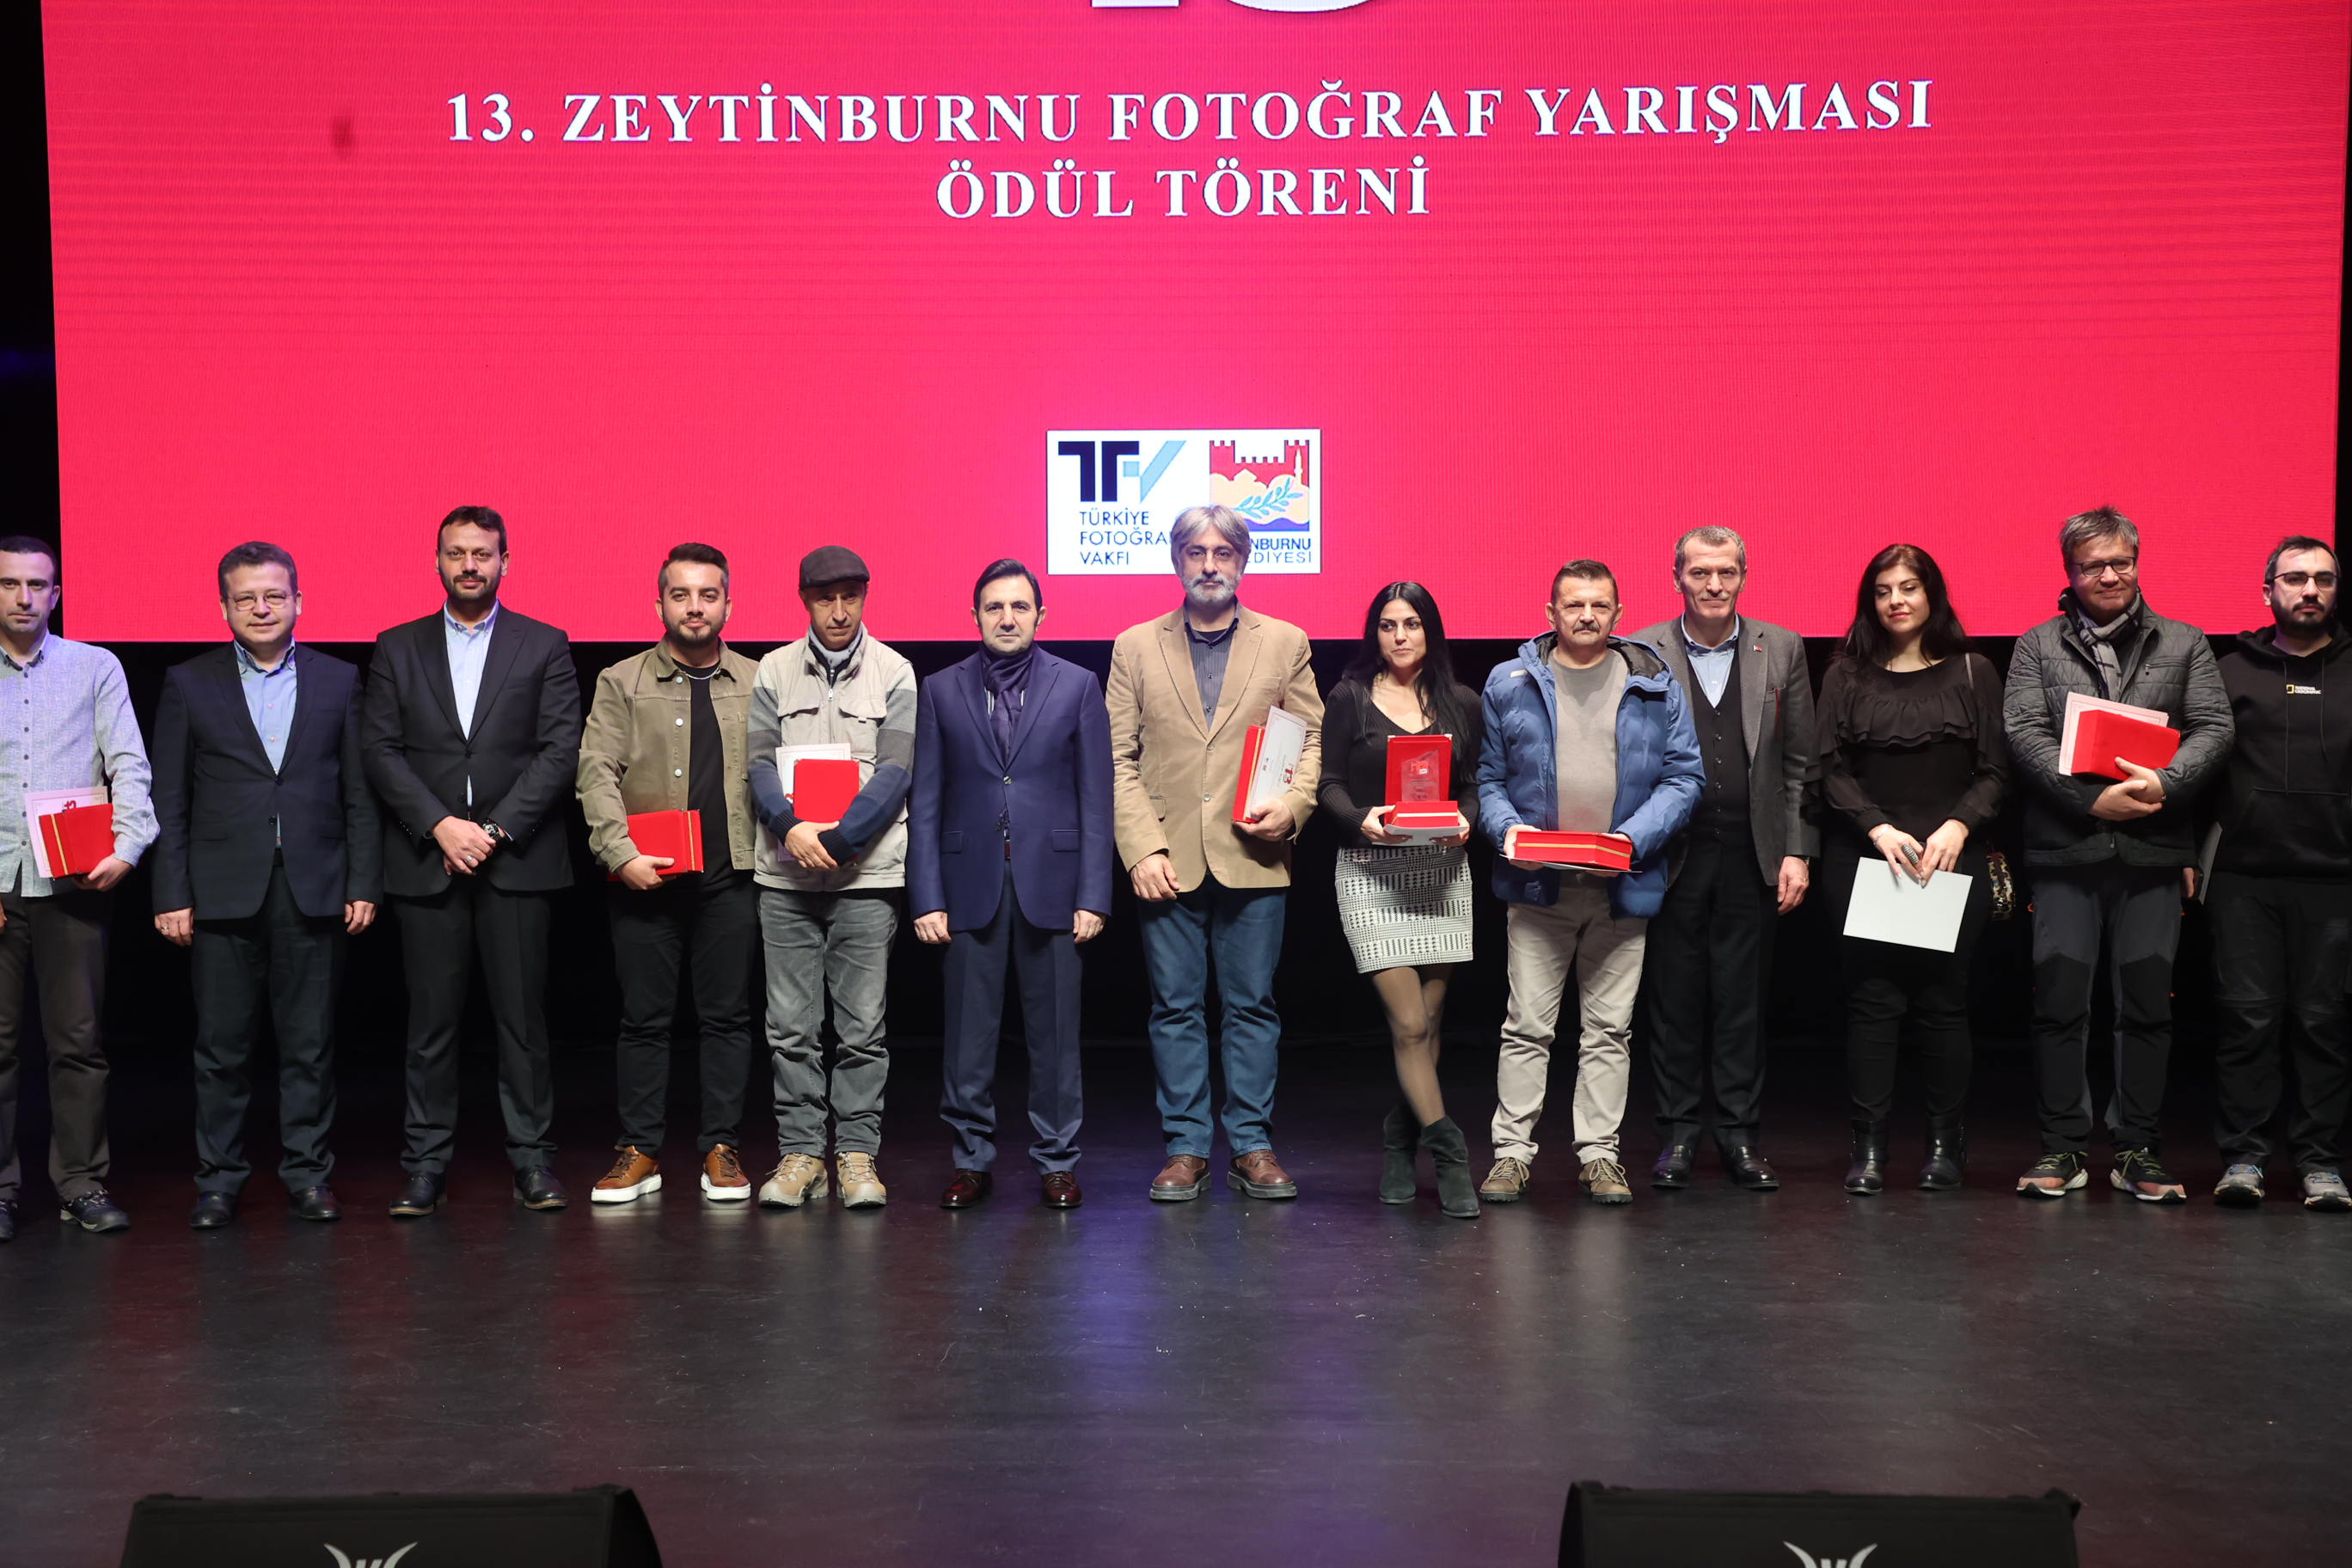 Zeytinburnu 13. Fotoğraf Yarışması’nın kazananlarına ödülleri dağıtıldı